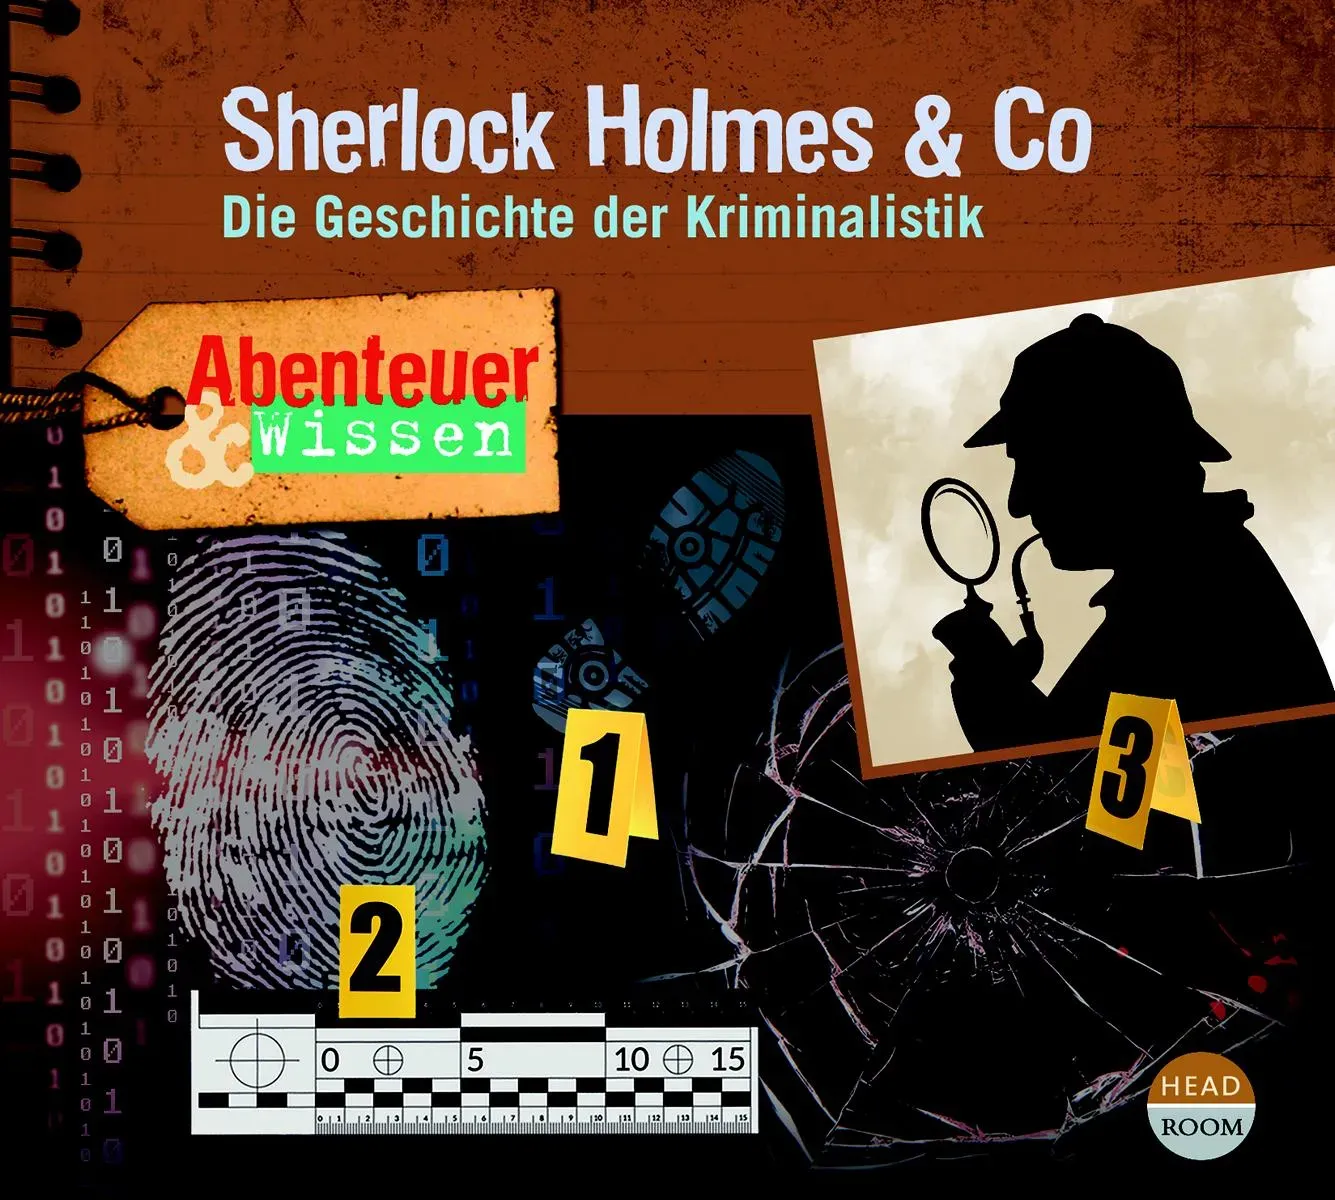 Abenteuer & Wissen - Sherlock Holmes & Co, Hörbücher von Daniela Wakonigg, Jochen Kolenda, Matthias Haase, Theresia Singer, U. V. A.